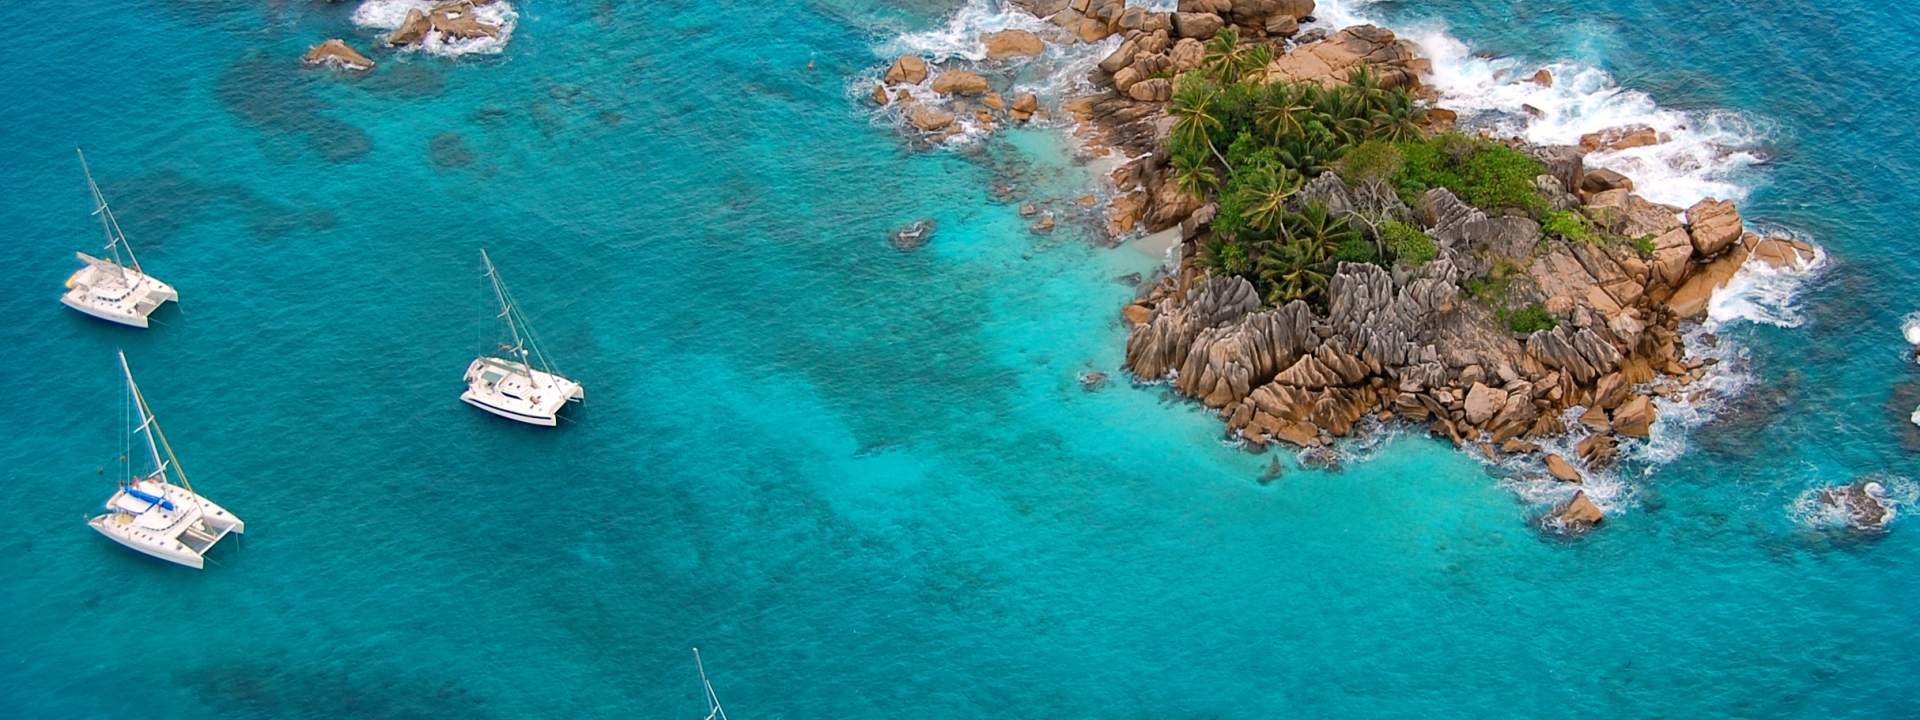 Découvrez les Seychelles à bord d'un somptueux catamaran avec équipage